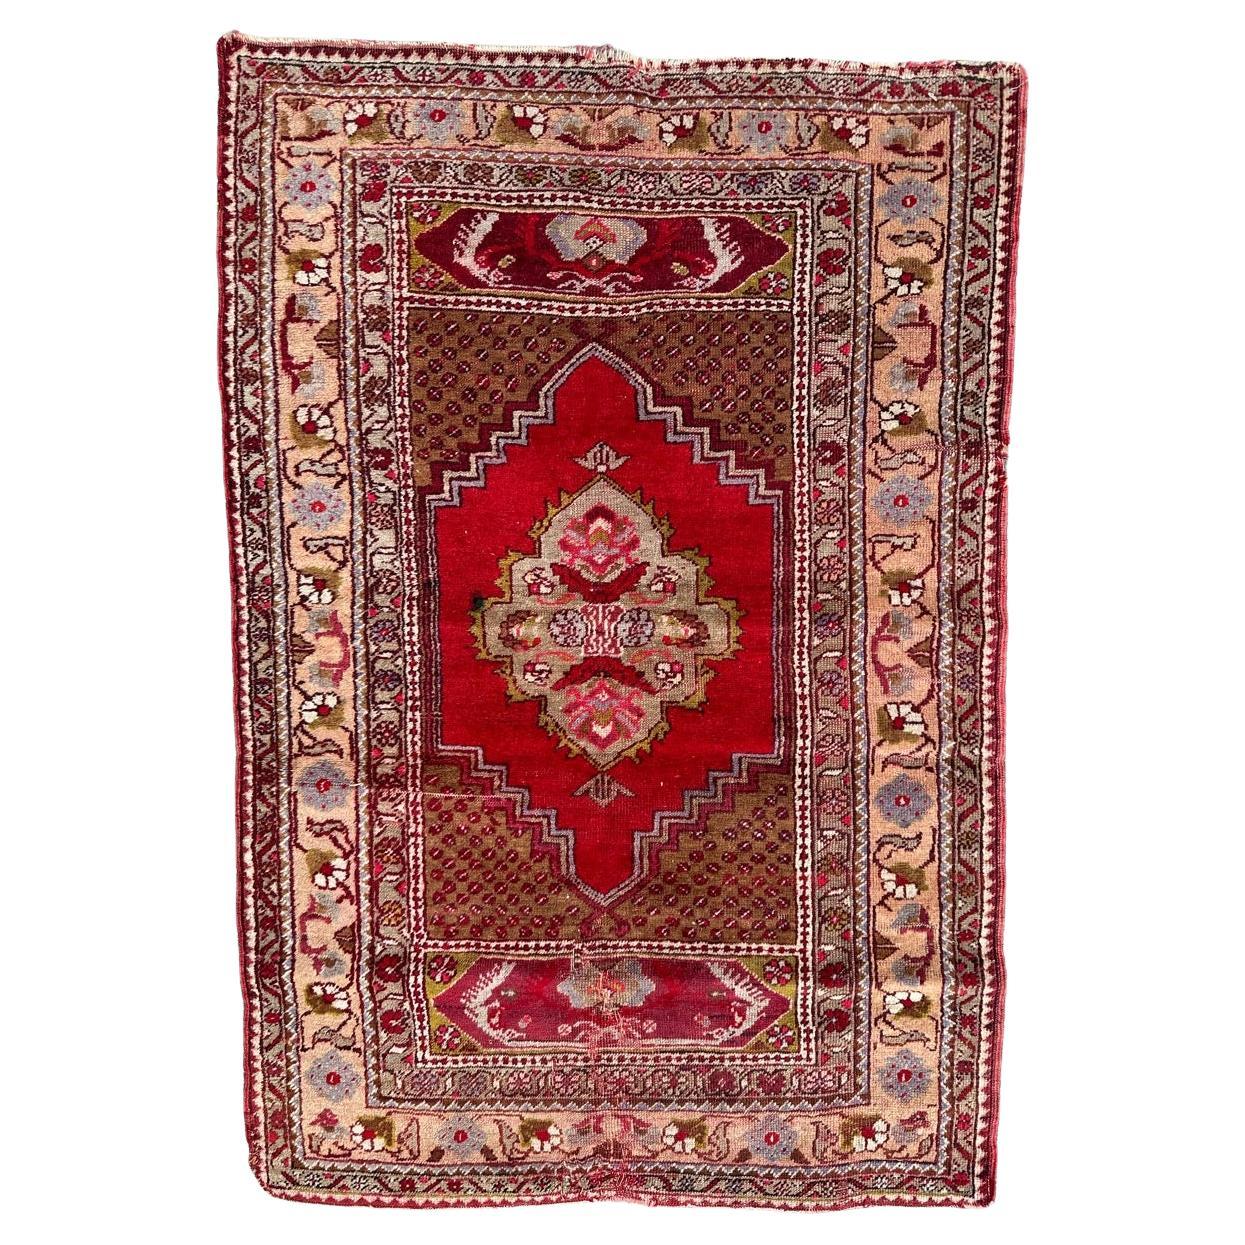 Le beau tapis turc antique de Bobyrug